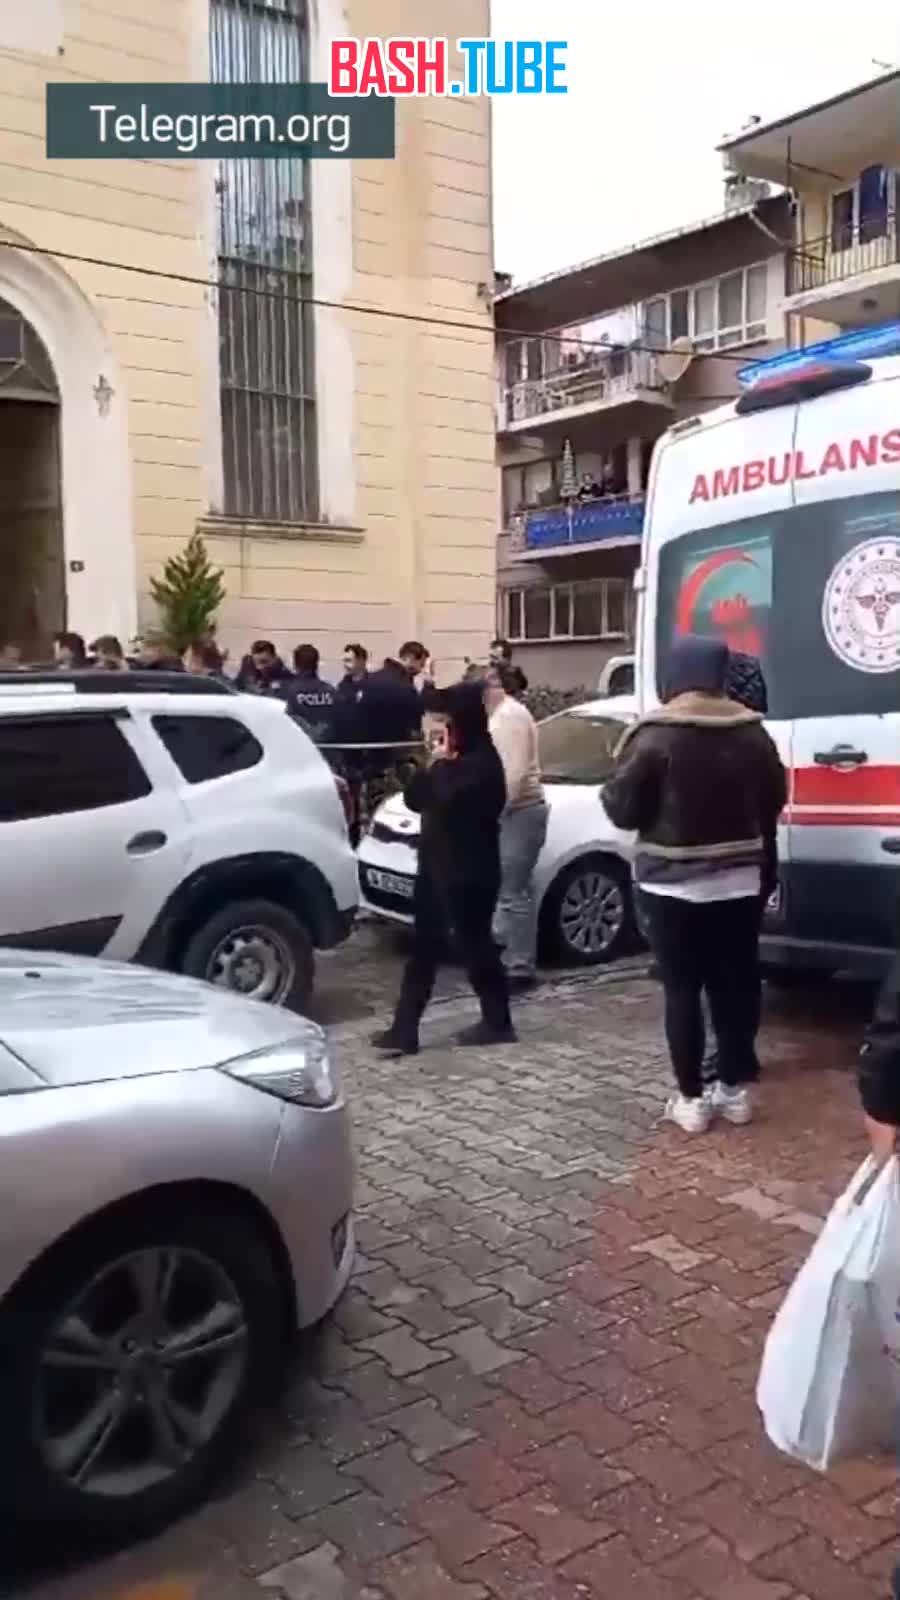  «Вооруженные люди напали на католическую церковь в Стамбуле во время службы», - сообщил министр внутренних дел Турции